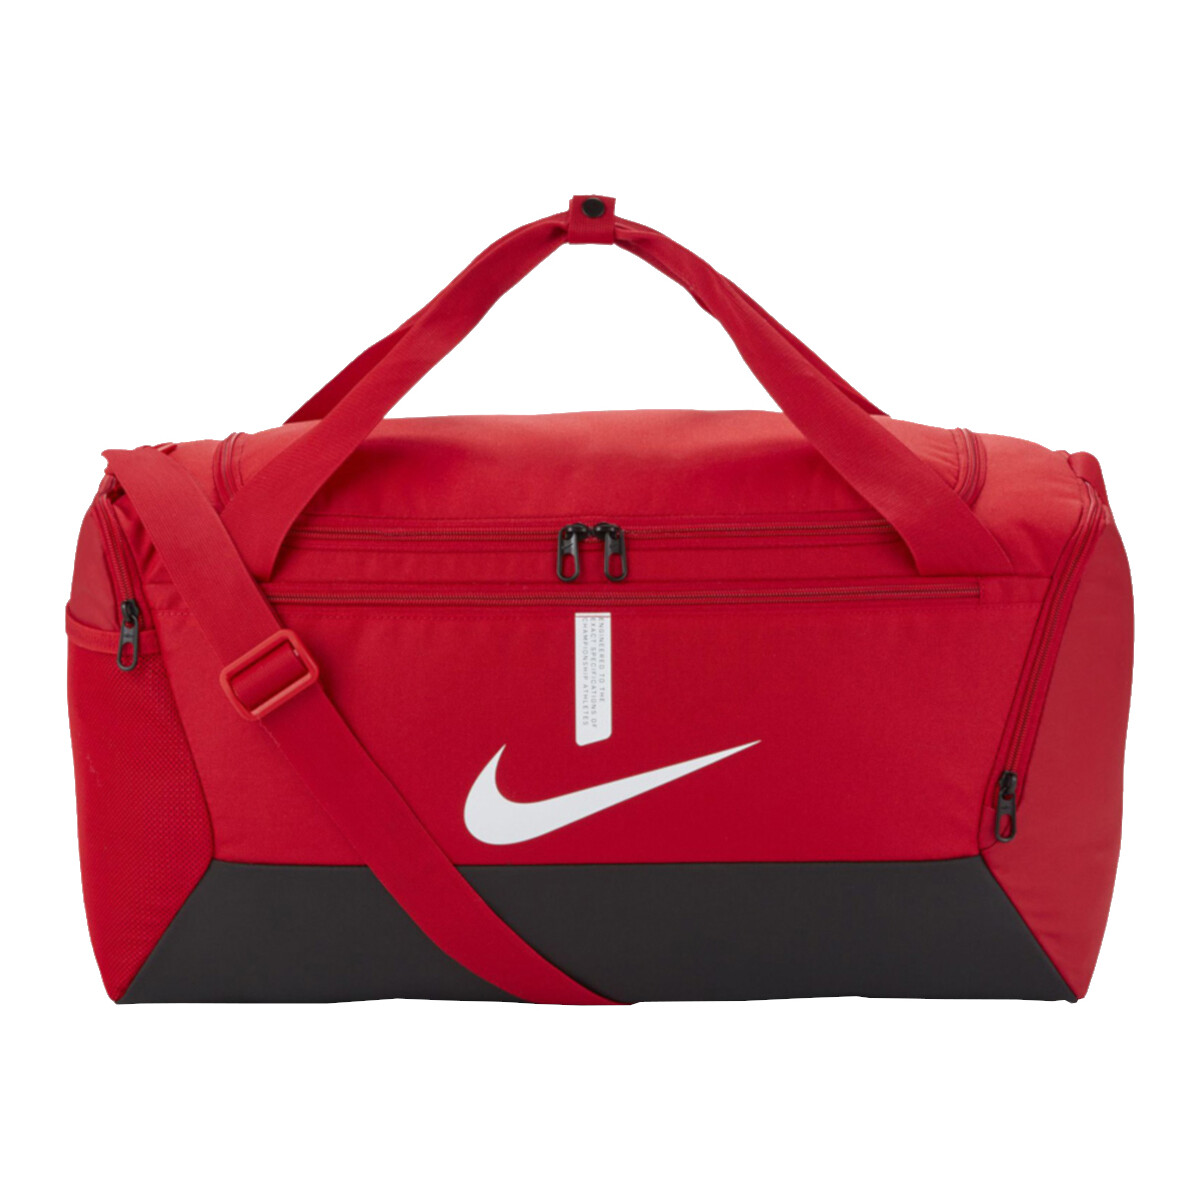 Τσάντες Αθλητικές τσάντες Nike Academy Team Red